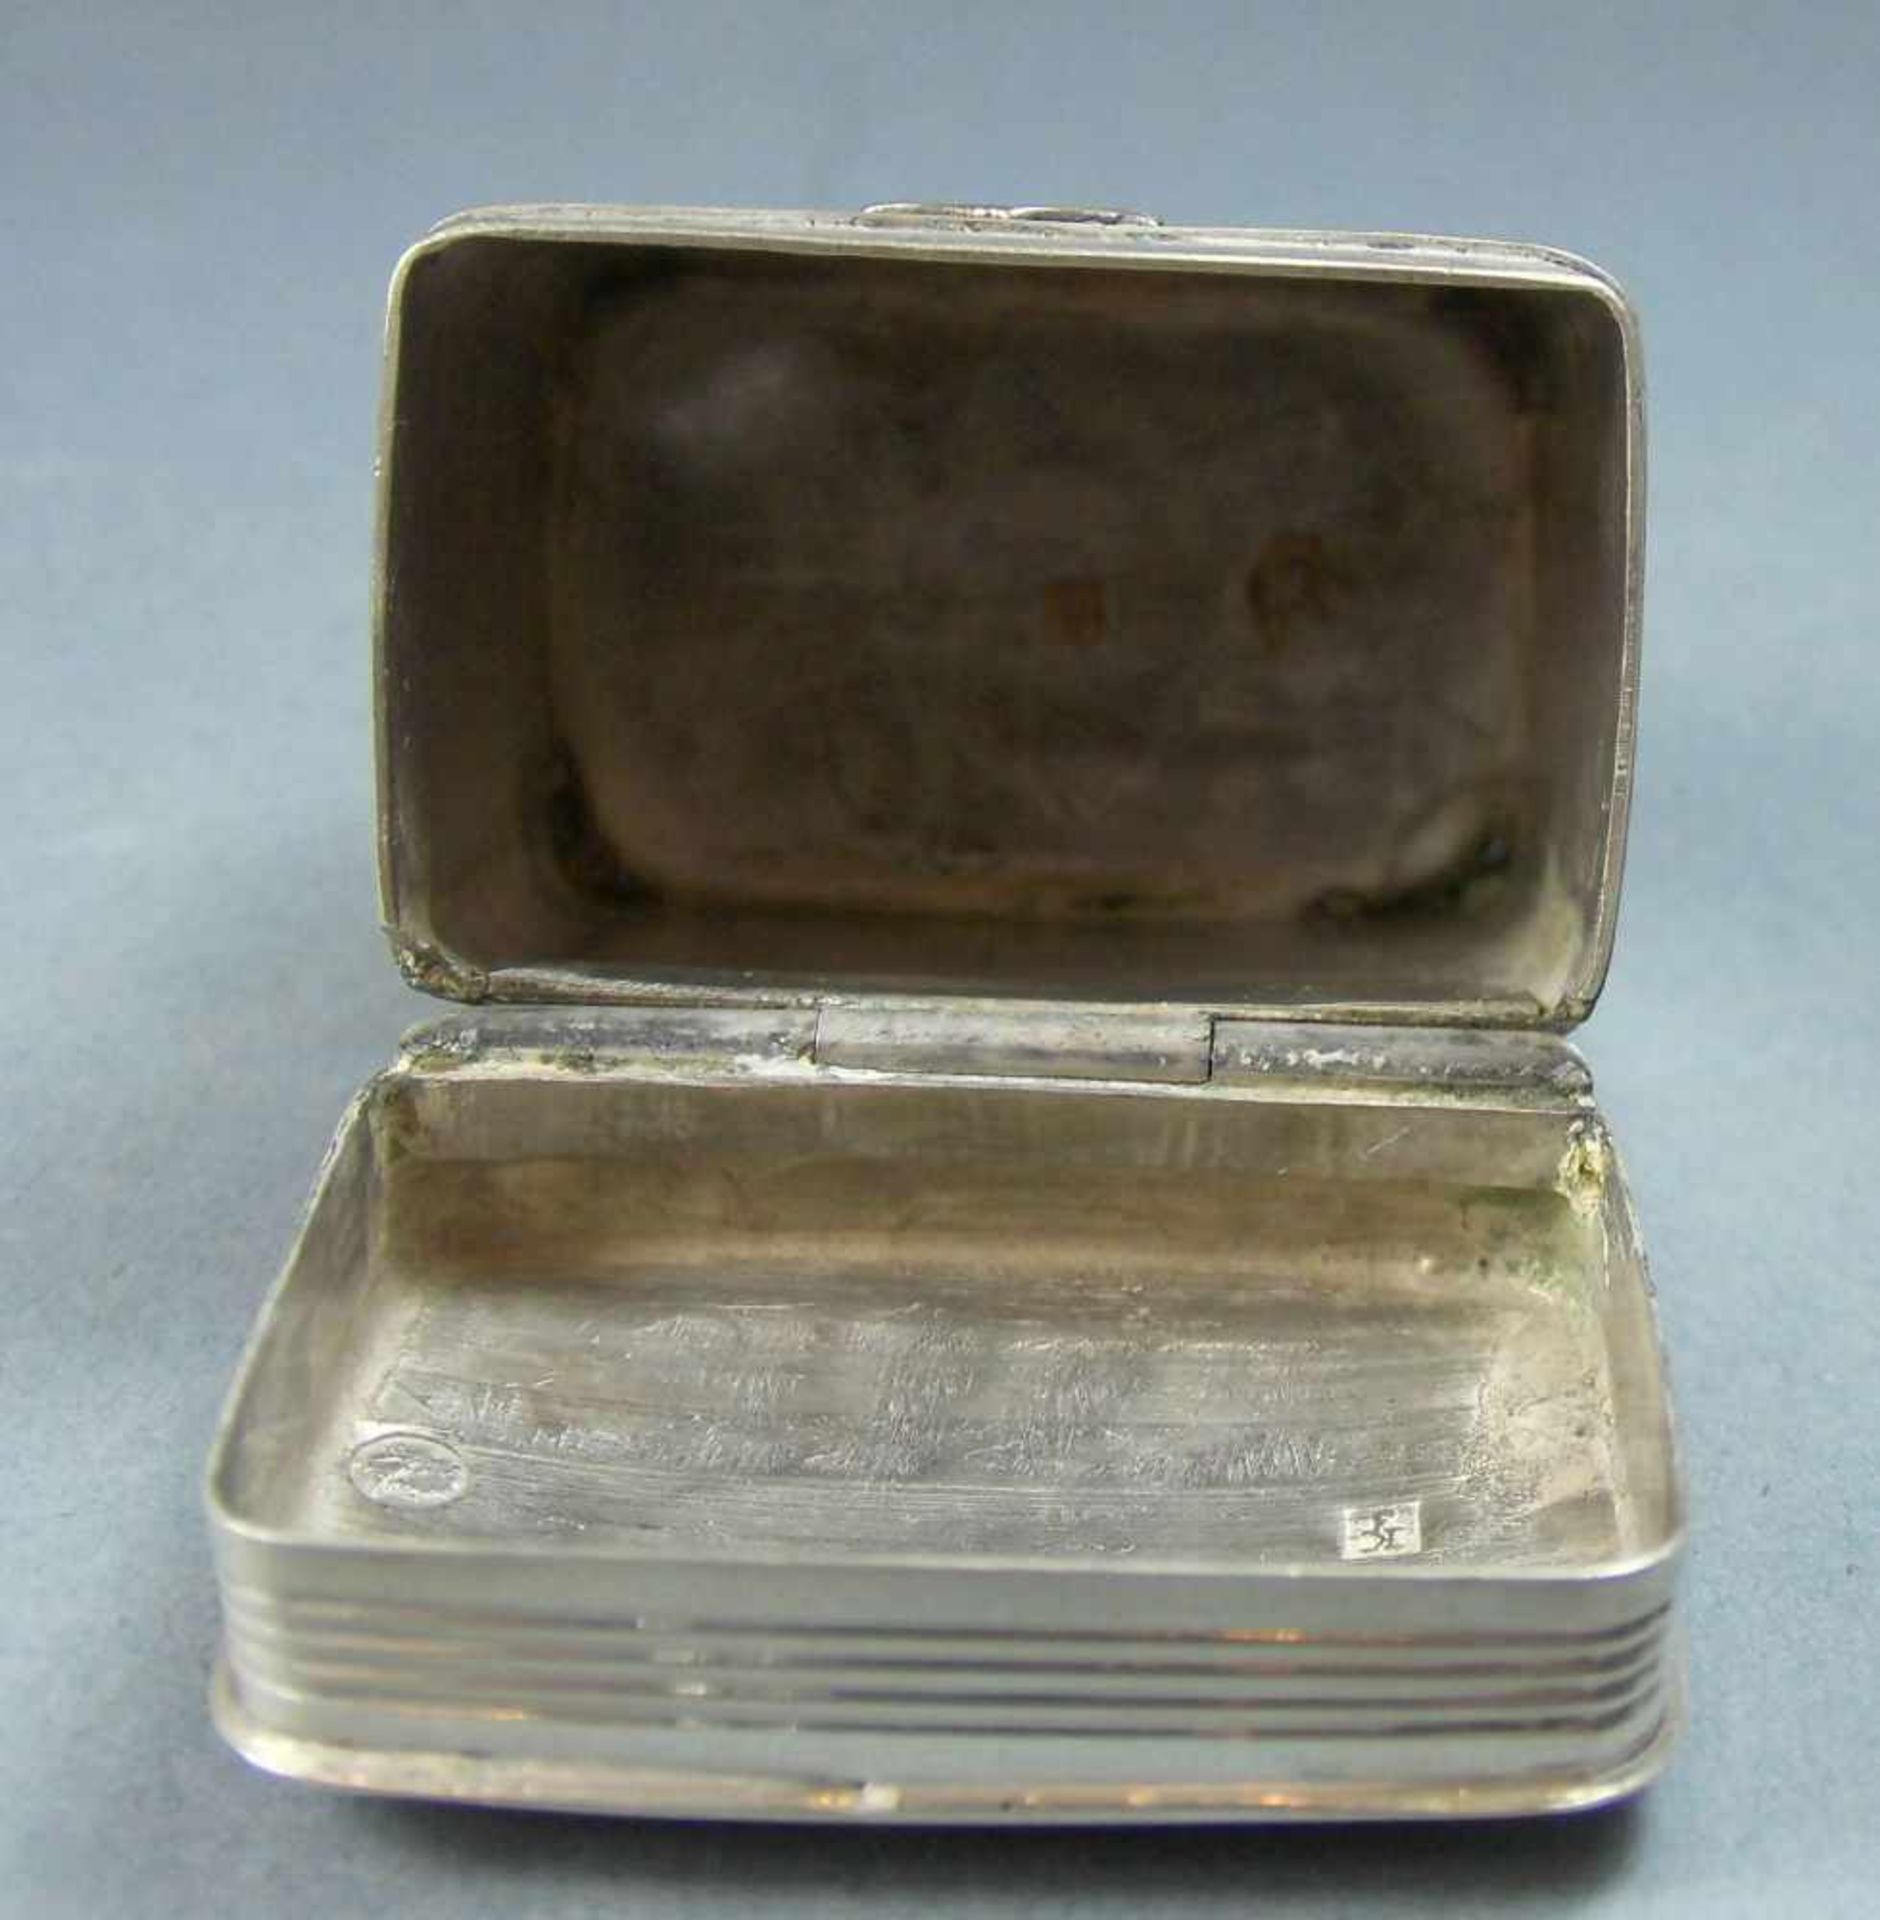 KLEINE PILLENDOSE / SCHATULLE / silver pill box, 20, Jh., 833 Silber (20 g), Niederlande. Gepunzt - Bild 6 aus 9